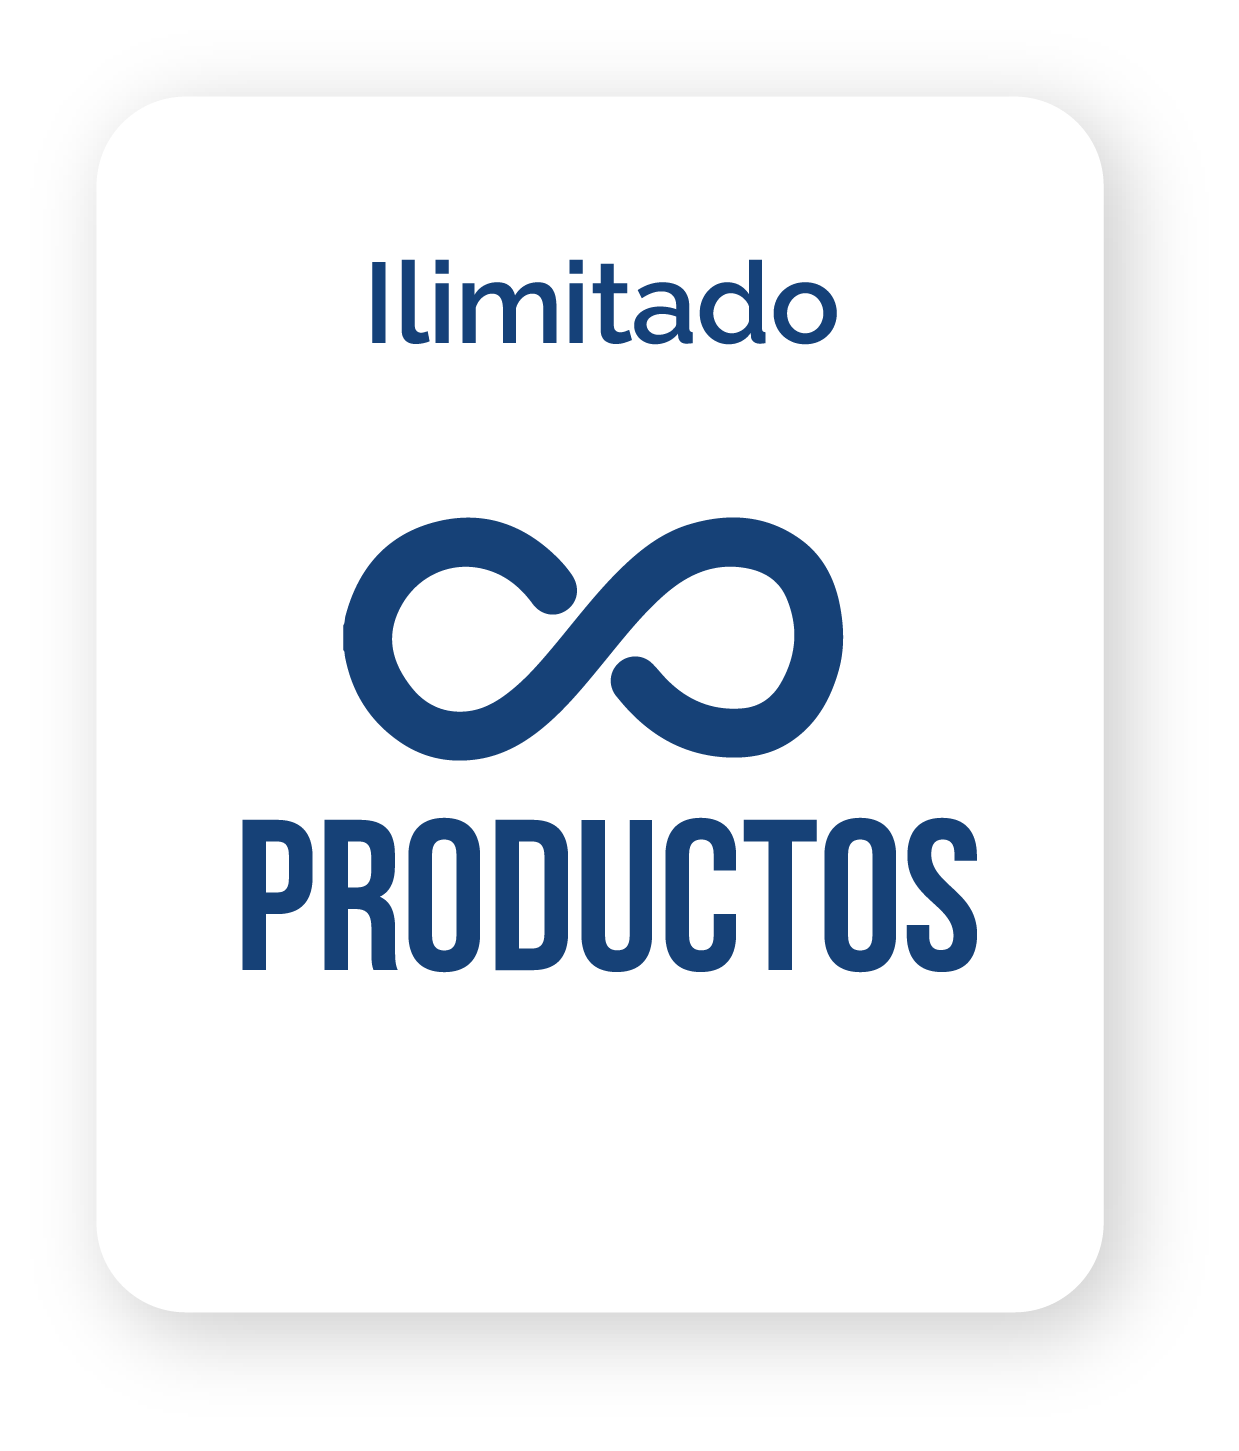 Un logotipo para productos con un símbolo de infinito.